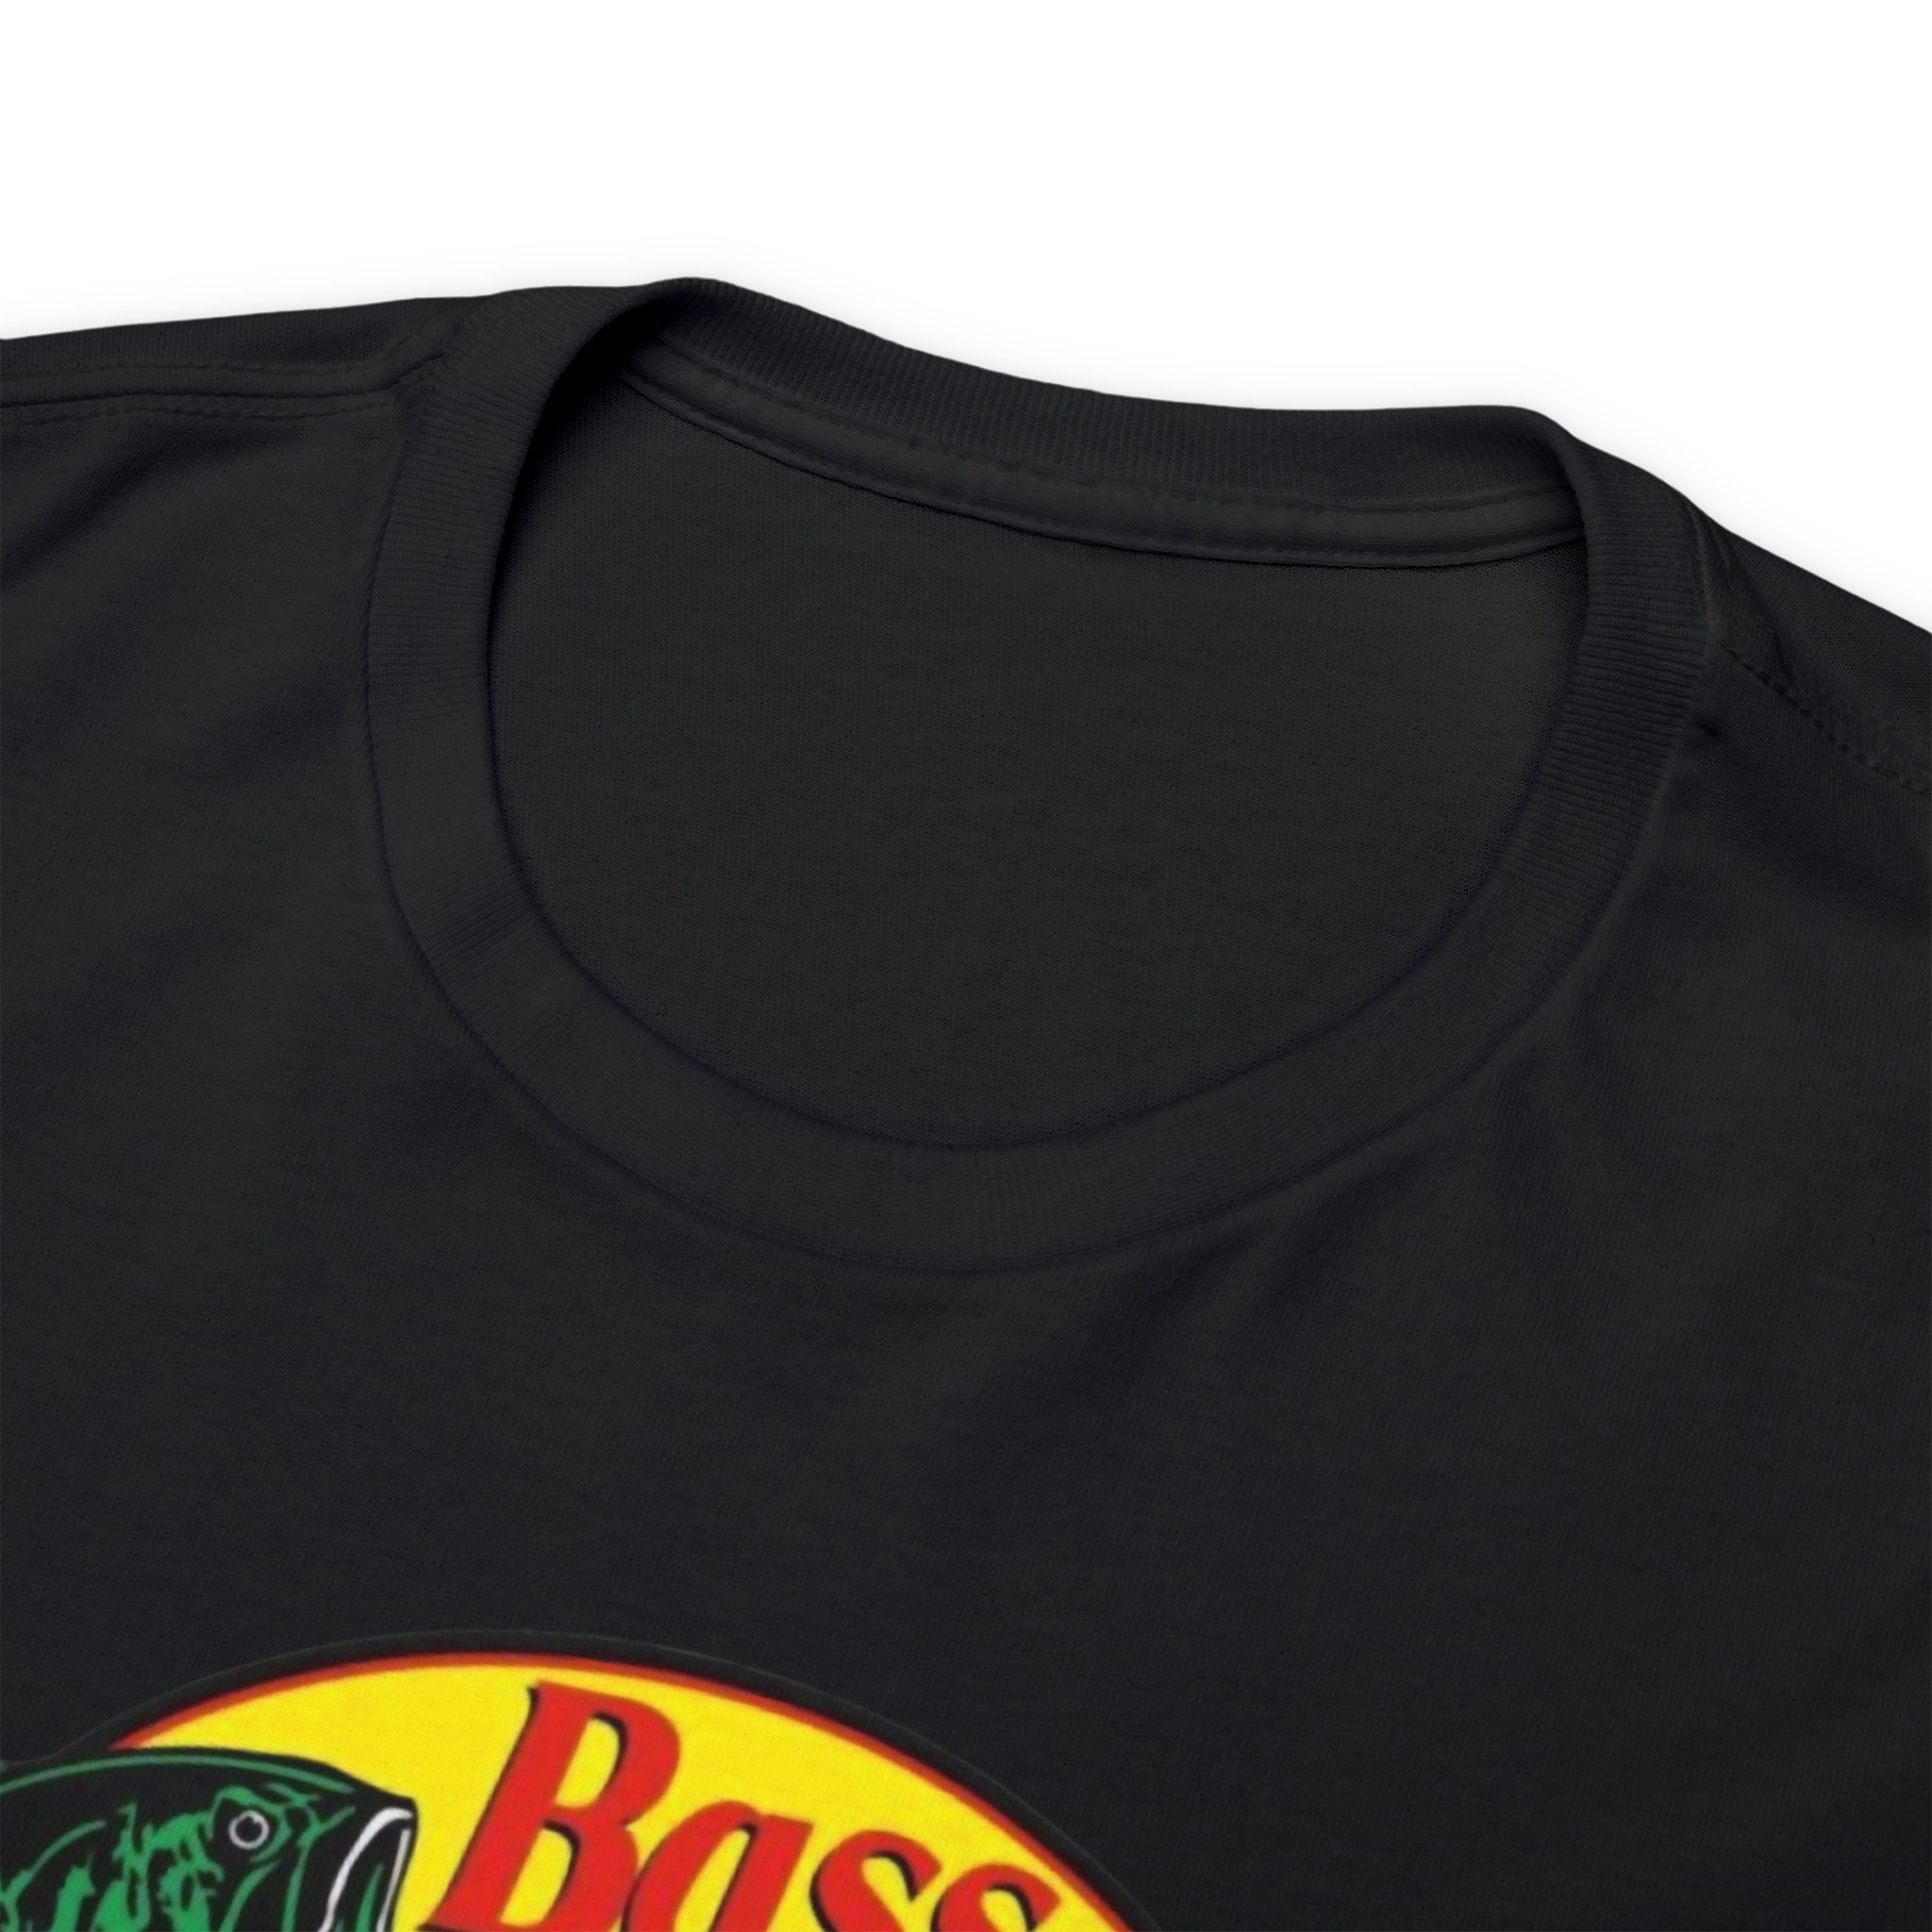 Bass Pro Shops T-shirt.t-shirt for Men. T-shirt for Women. Summer T-shirt.  Perfect for a Gift -  Canada